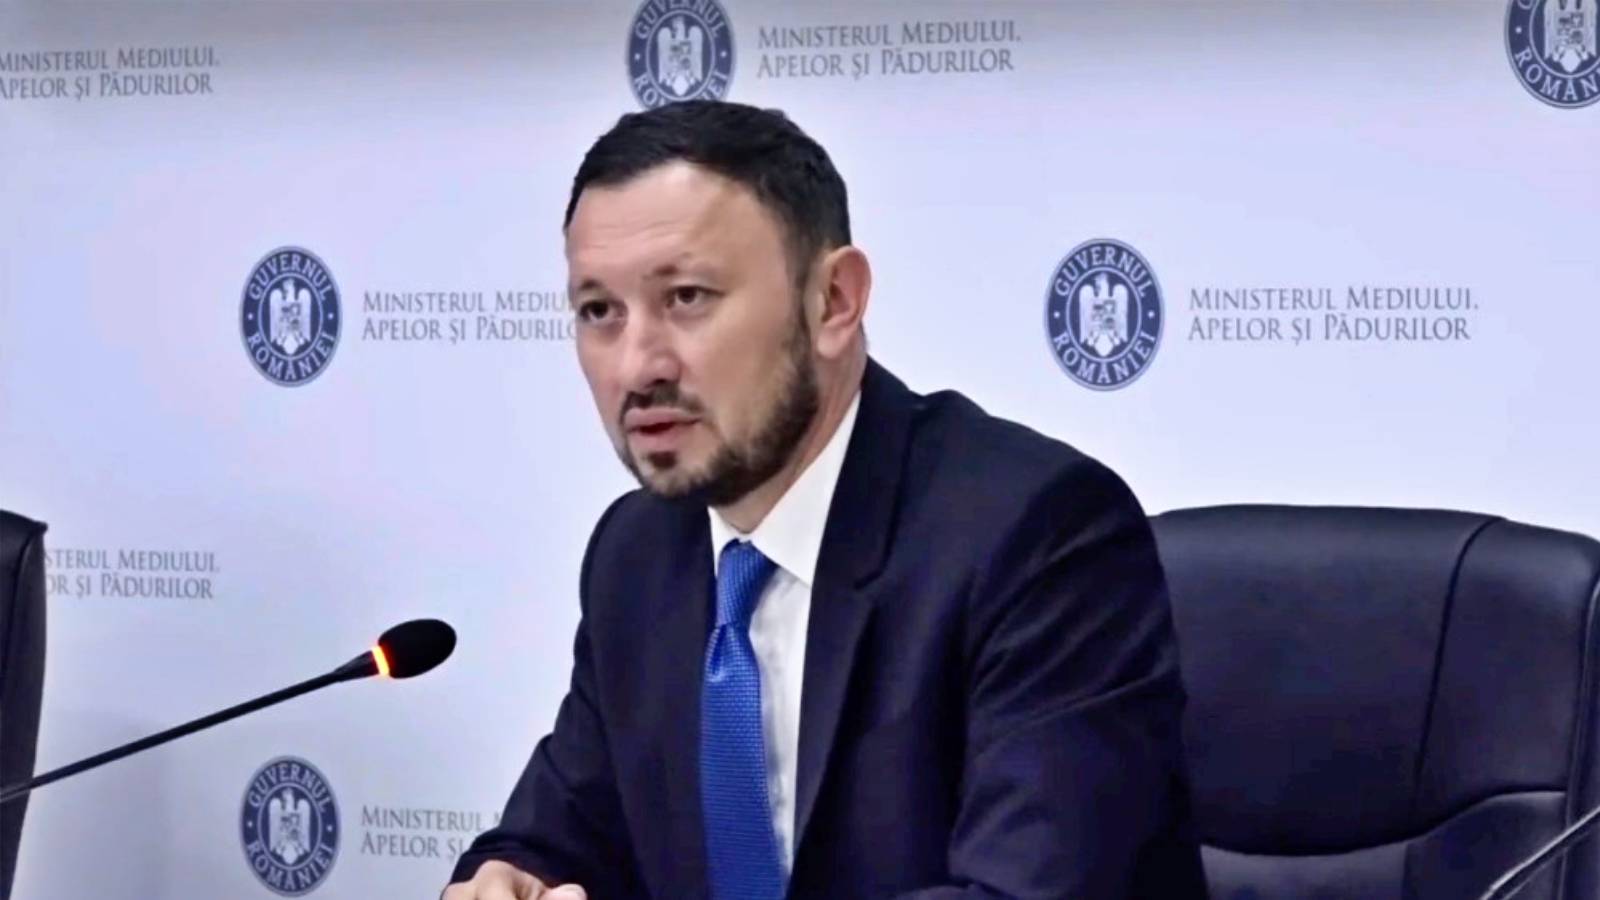 Ministrul Mediului Important Anunt ULTIM MOMENT Actiunile Luate Romania